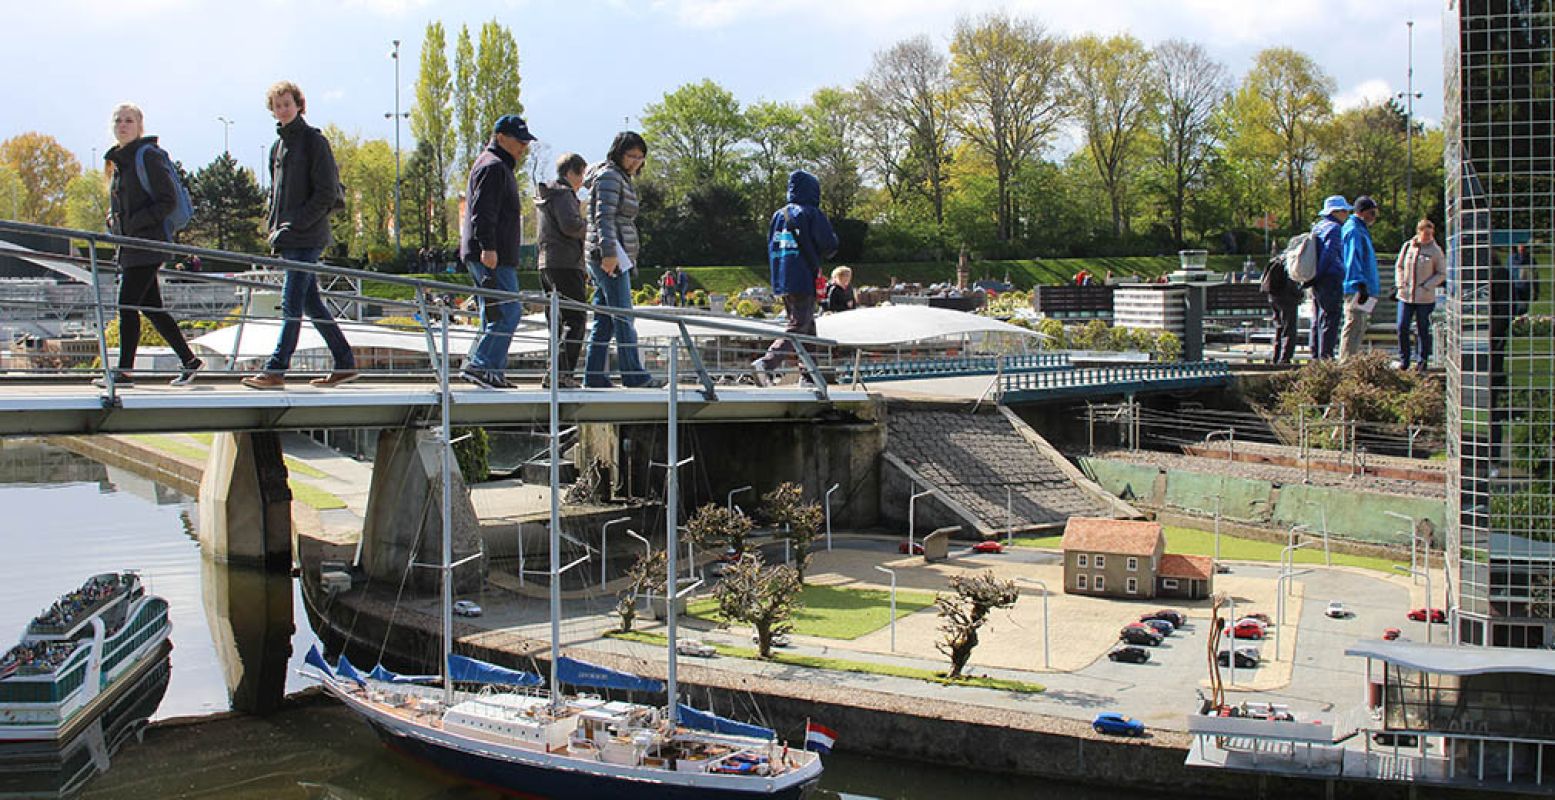 Toeristen lopen over de miniversie van de Erasmusbrug over het water. Foto: Redactie DagjeWeg.NL, Coby Boschma.